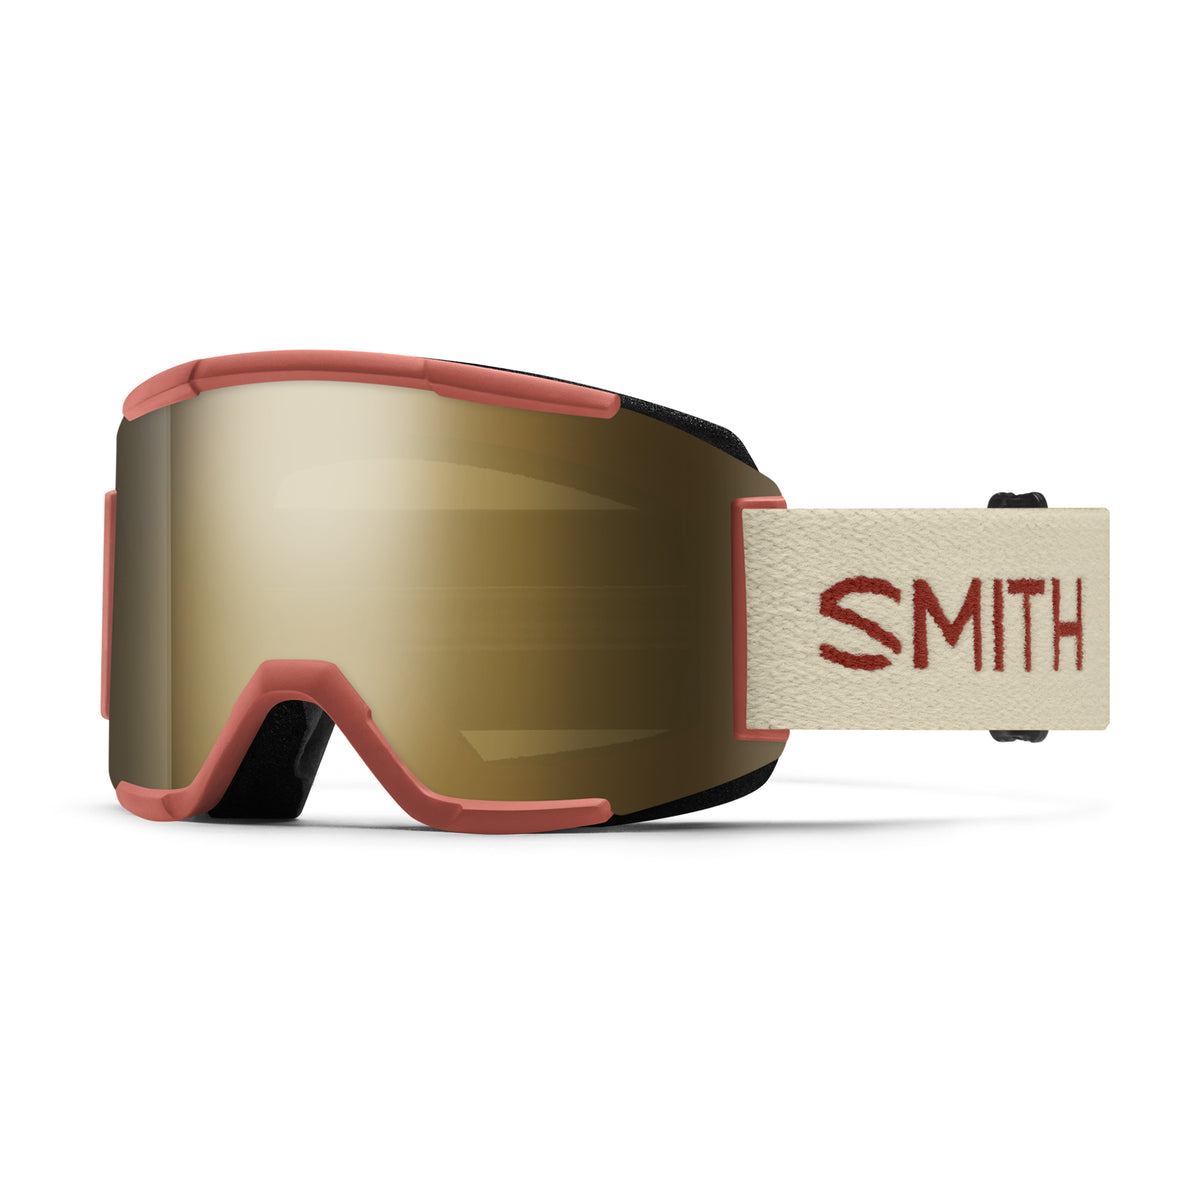 Smith SQUAD Snow Goggles